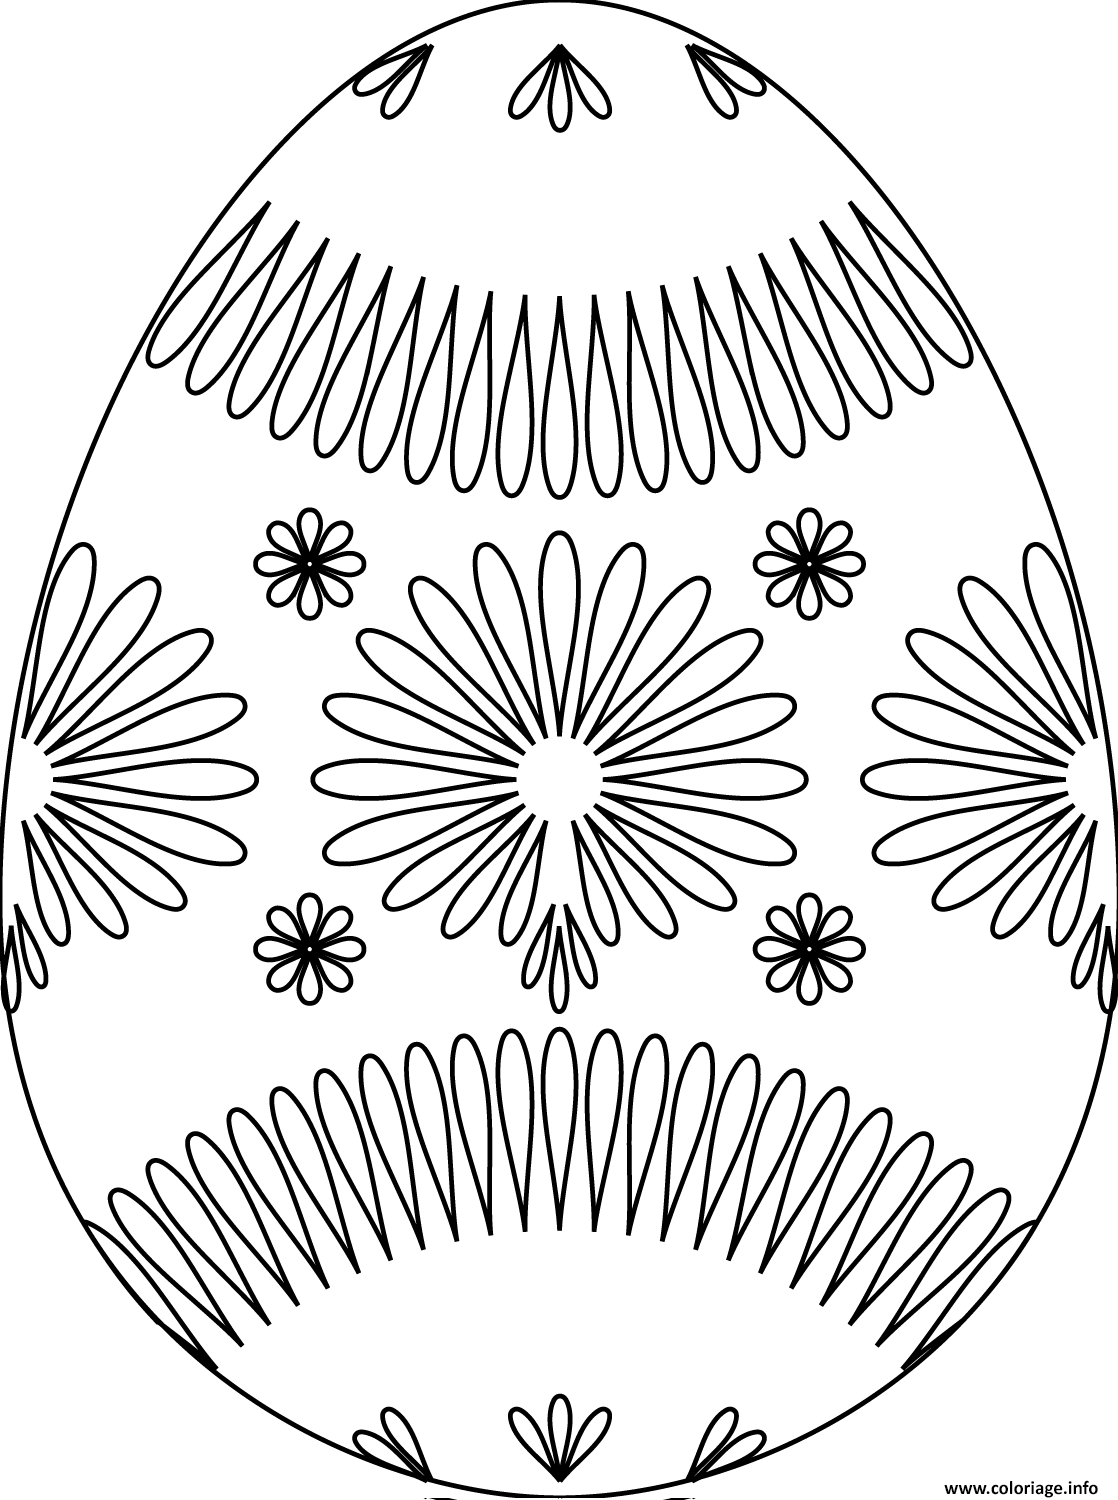 Coloriage Oeuf De Paques Avec Flower Pattern Dessin à Imprimer